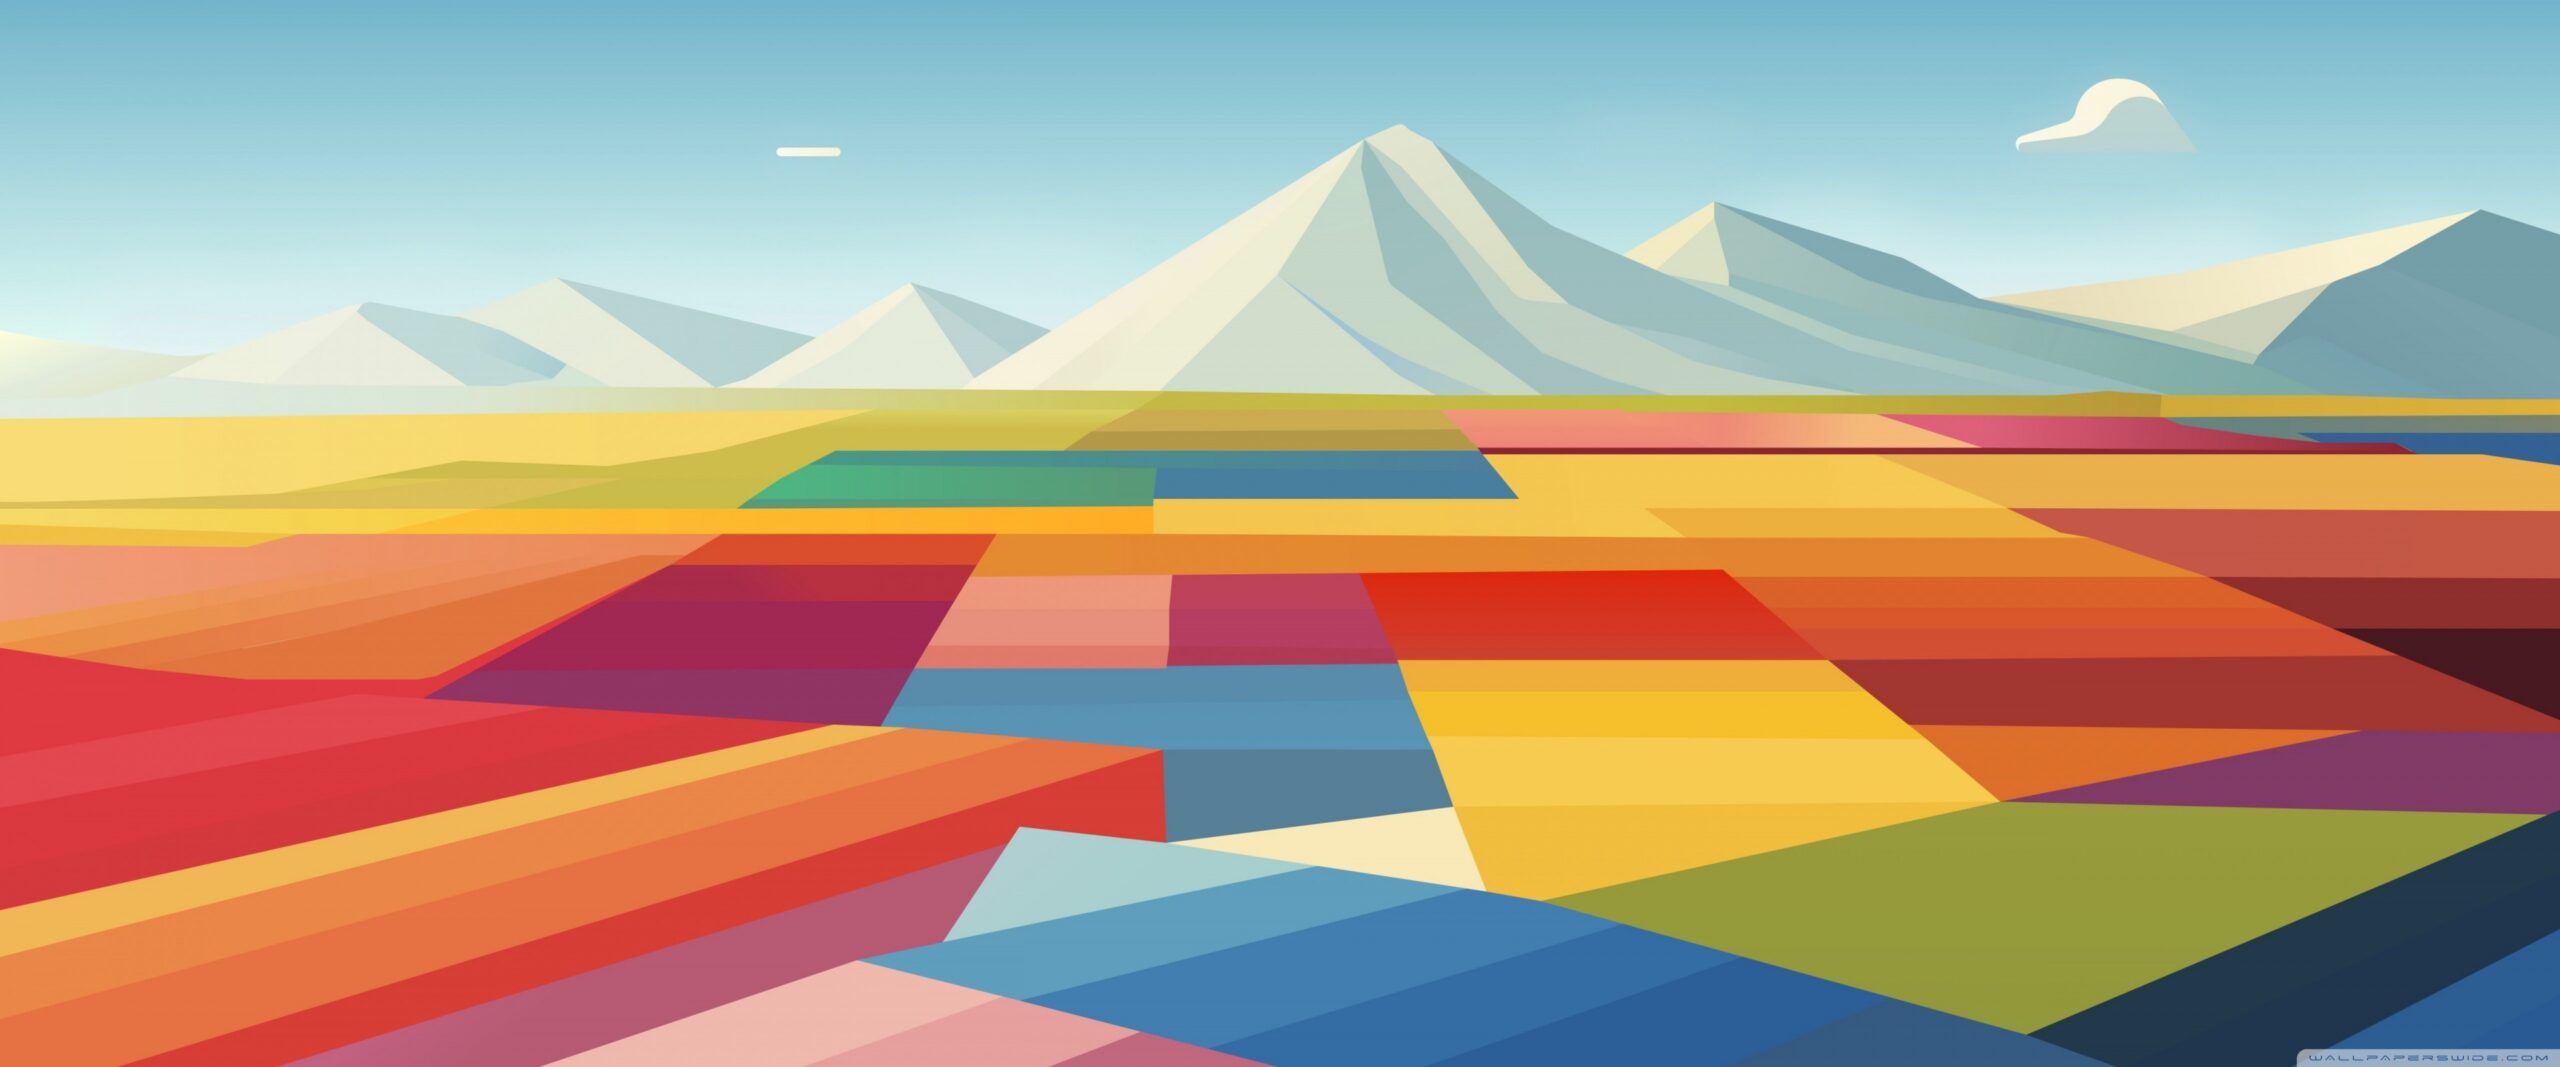 macbook_pro_colorful_landscape-wallpaper-3840x1600